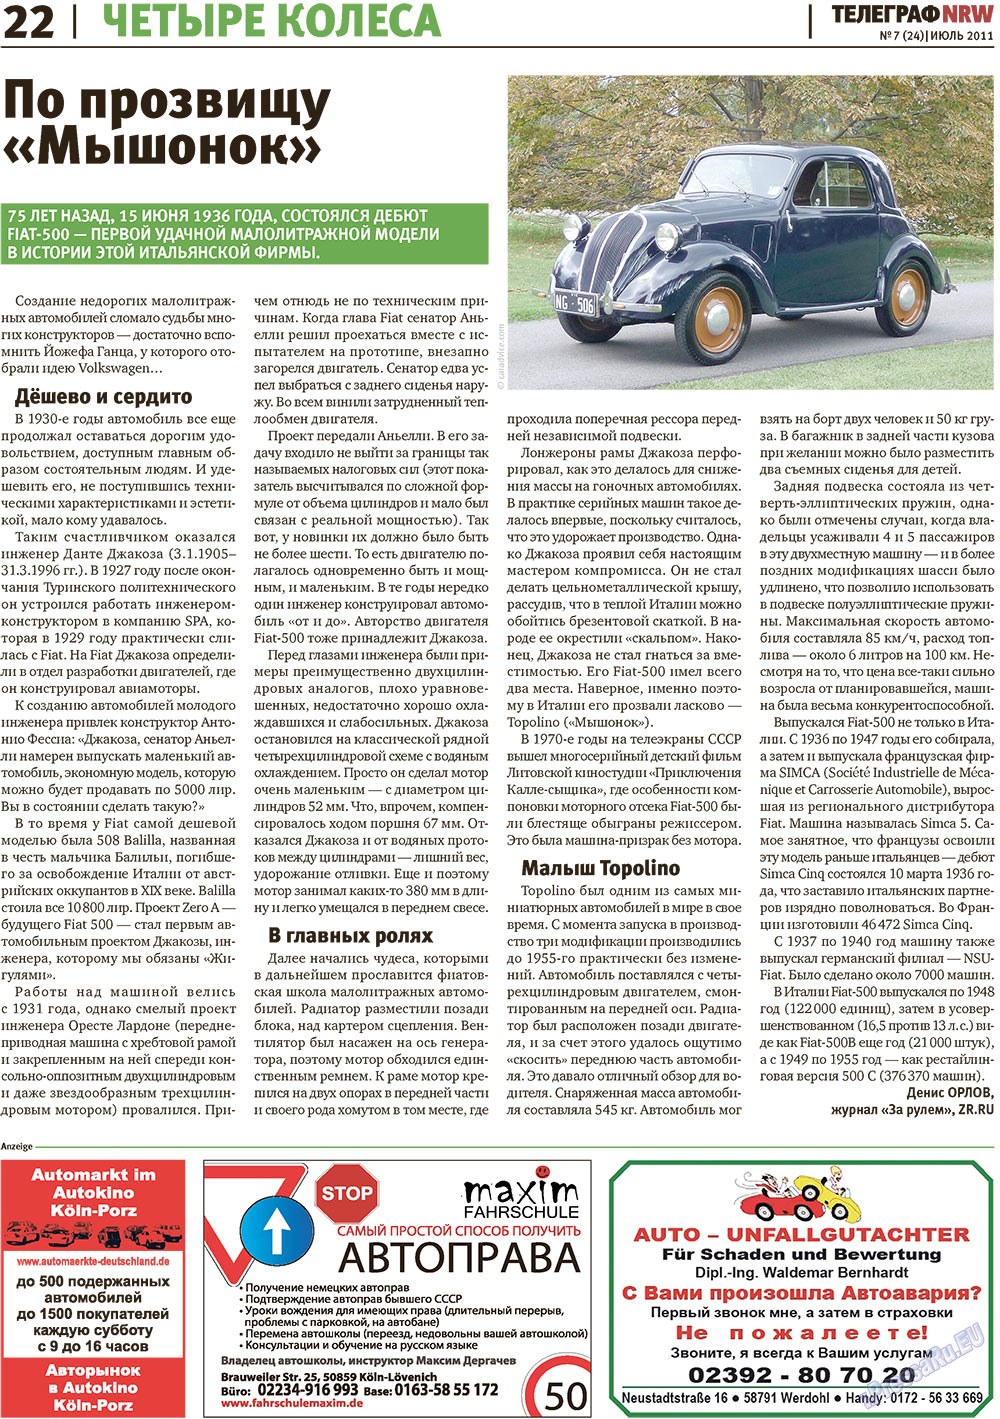 Телеграф NRW (газета). 2011 год, номер 7, стр. 22